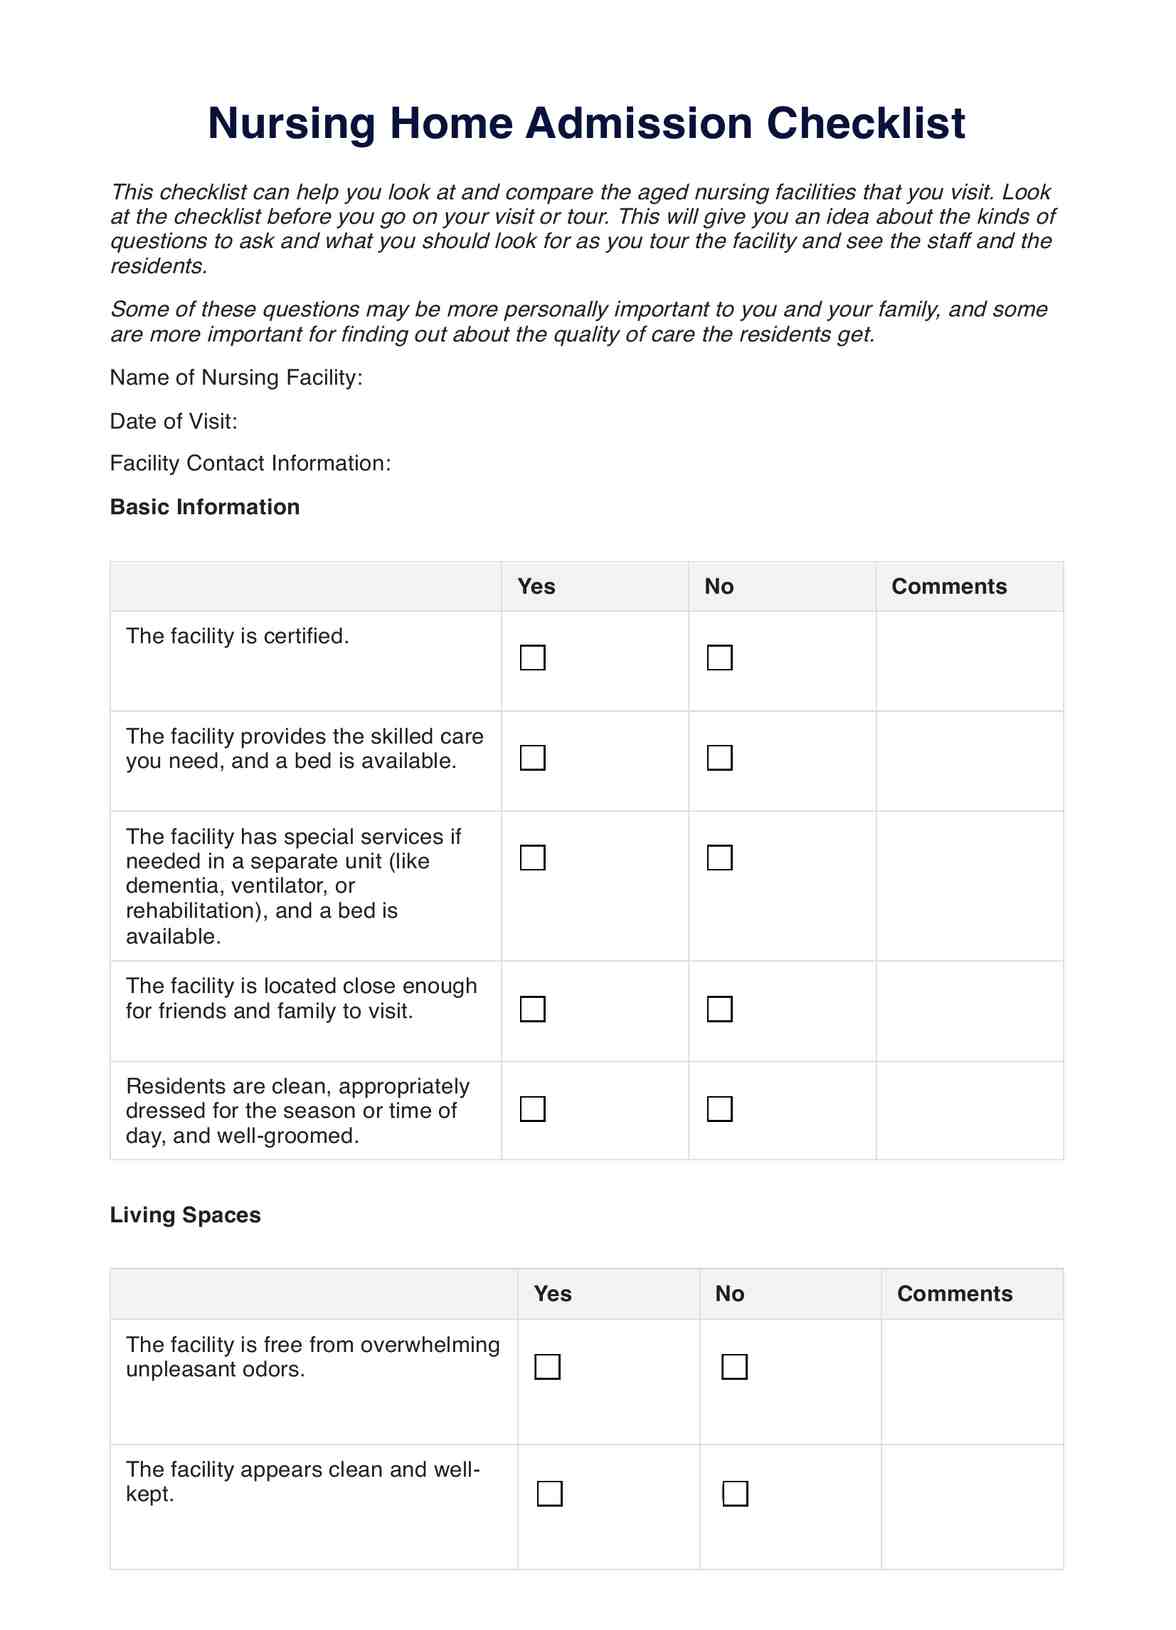 Nursing Home Admission Checklist PDF Example